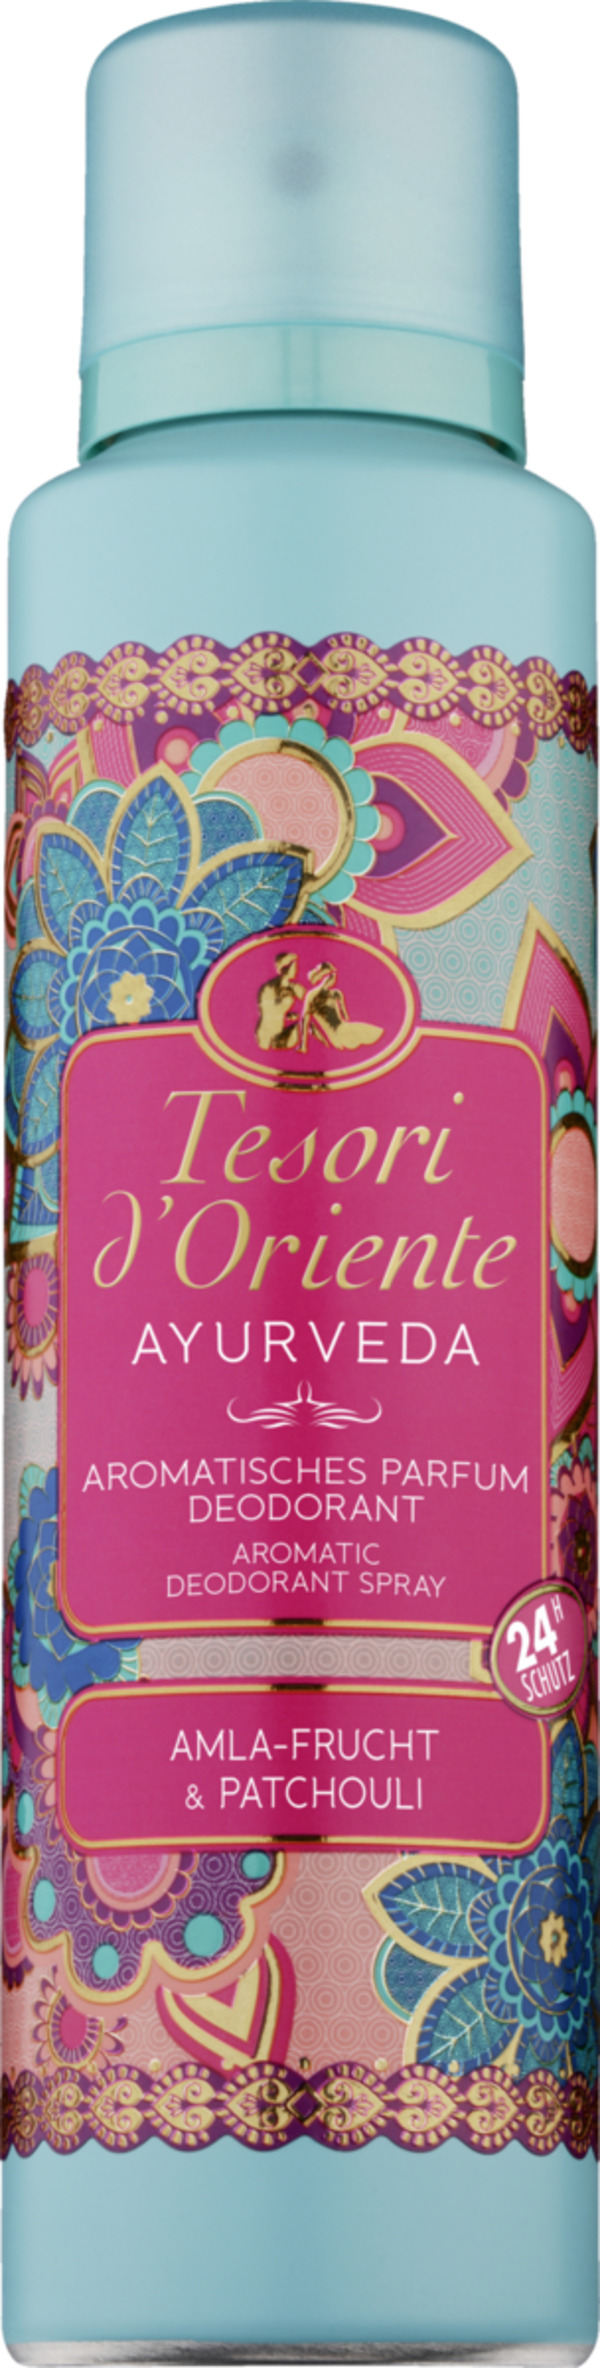 Bild 1 von Tesori d'Oriente Parfum Deodorant Spray Ayurveda, 150 ml